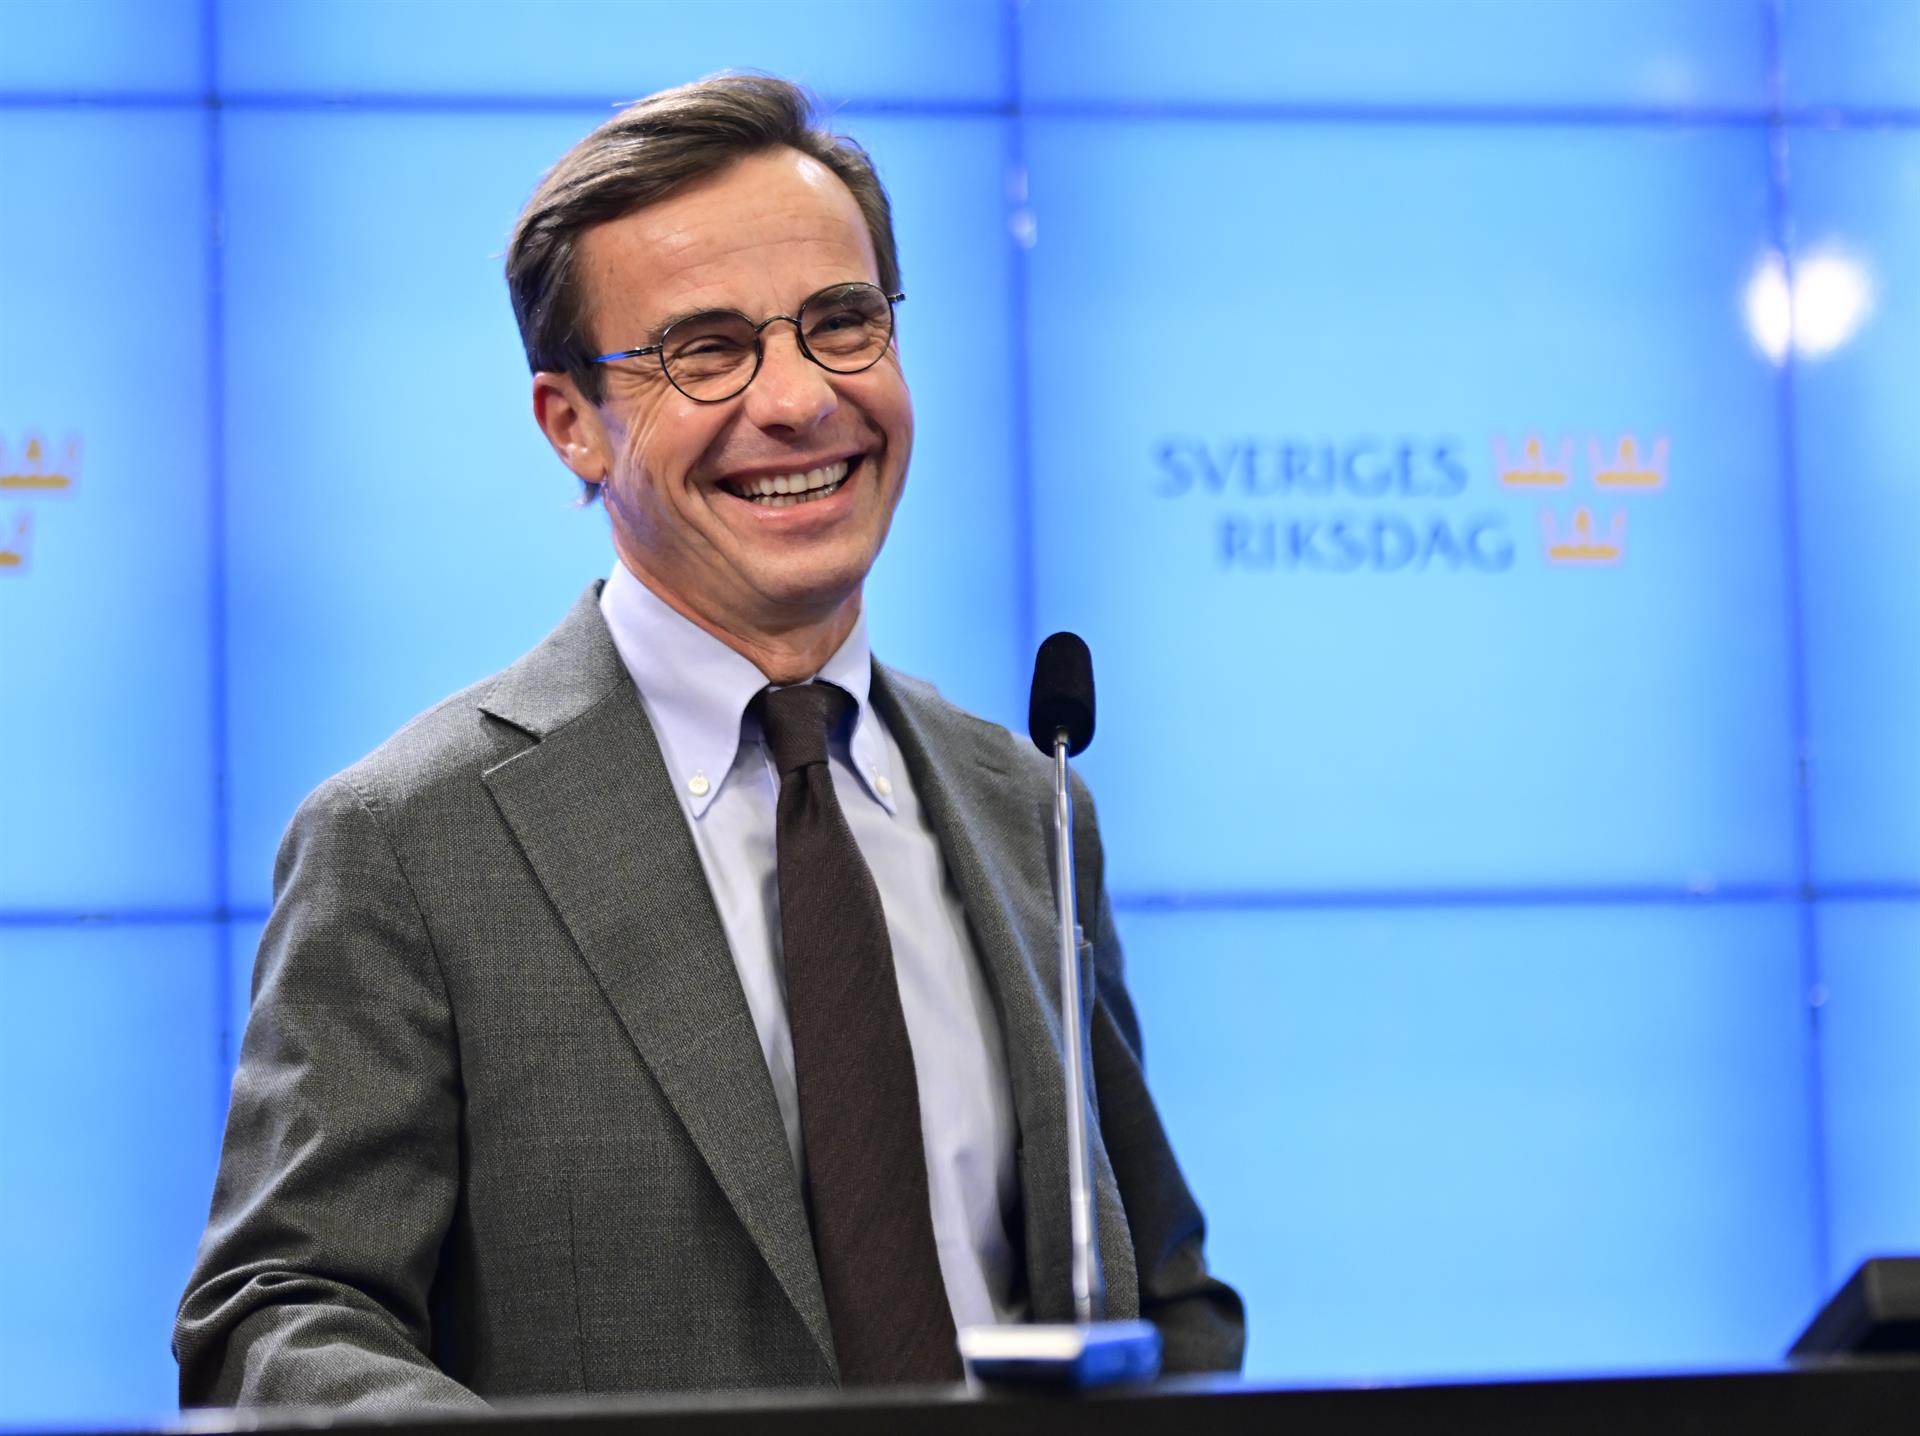 El líder conservador sueco, Ulf Kristersson, que será el nuevo primer ministro del país tras un acuerdo con democristianos, liberales y ultraderecha. EFE/EPA/Jonas Ekstromer SWEDEN OUT